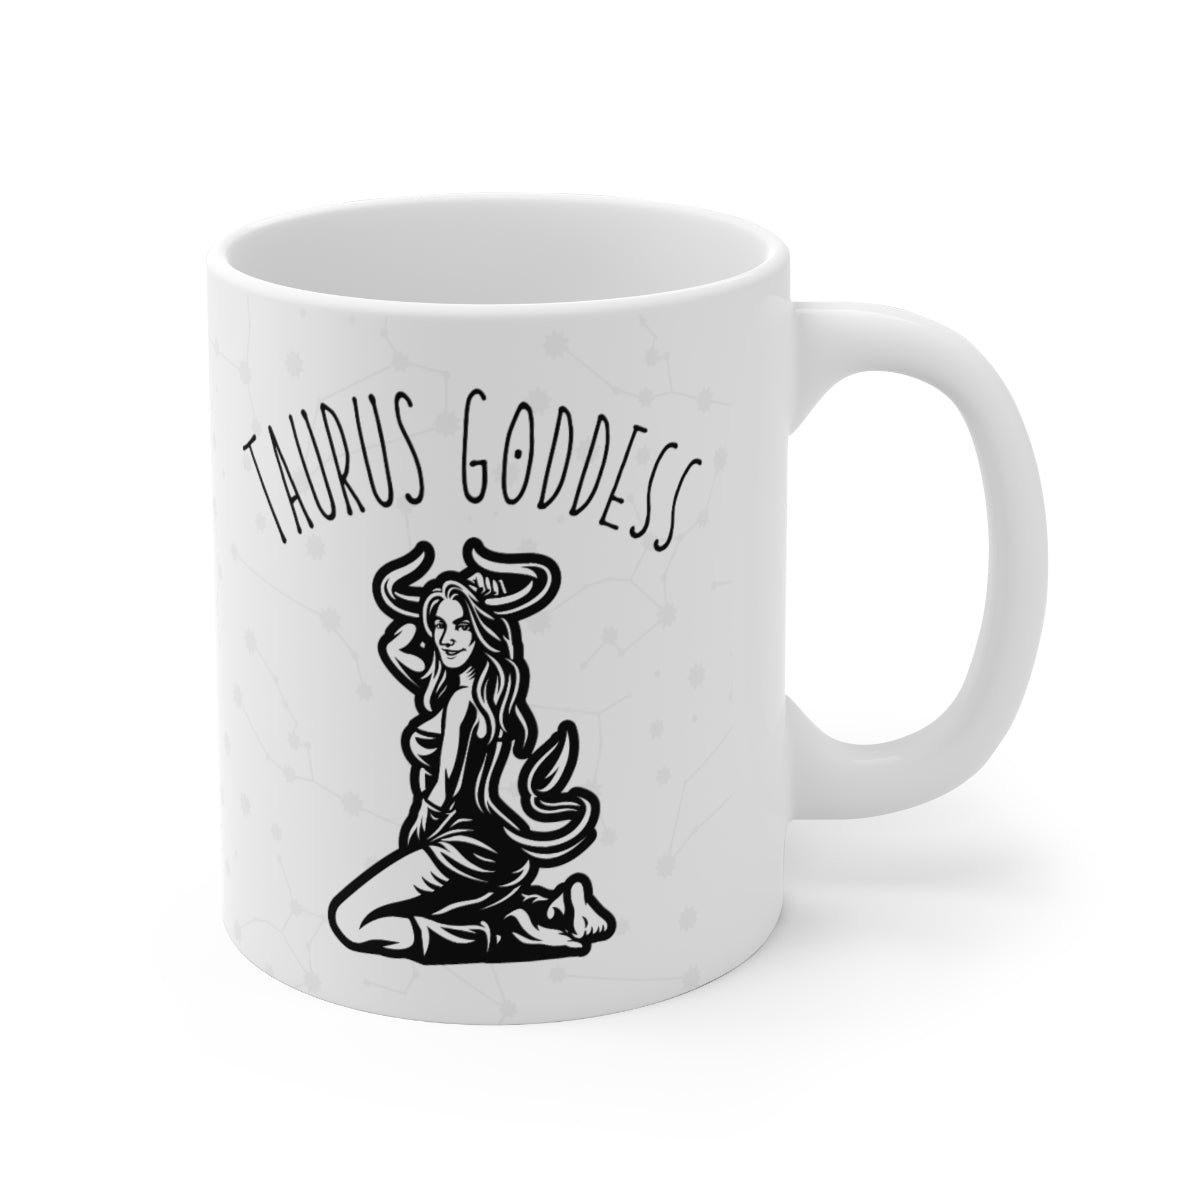 Taurus Goddess Astrology Mug 4